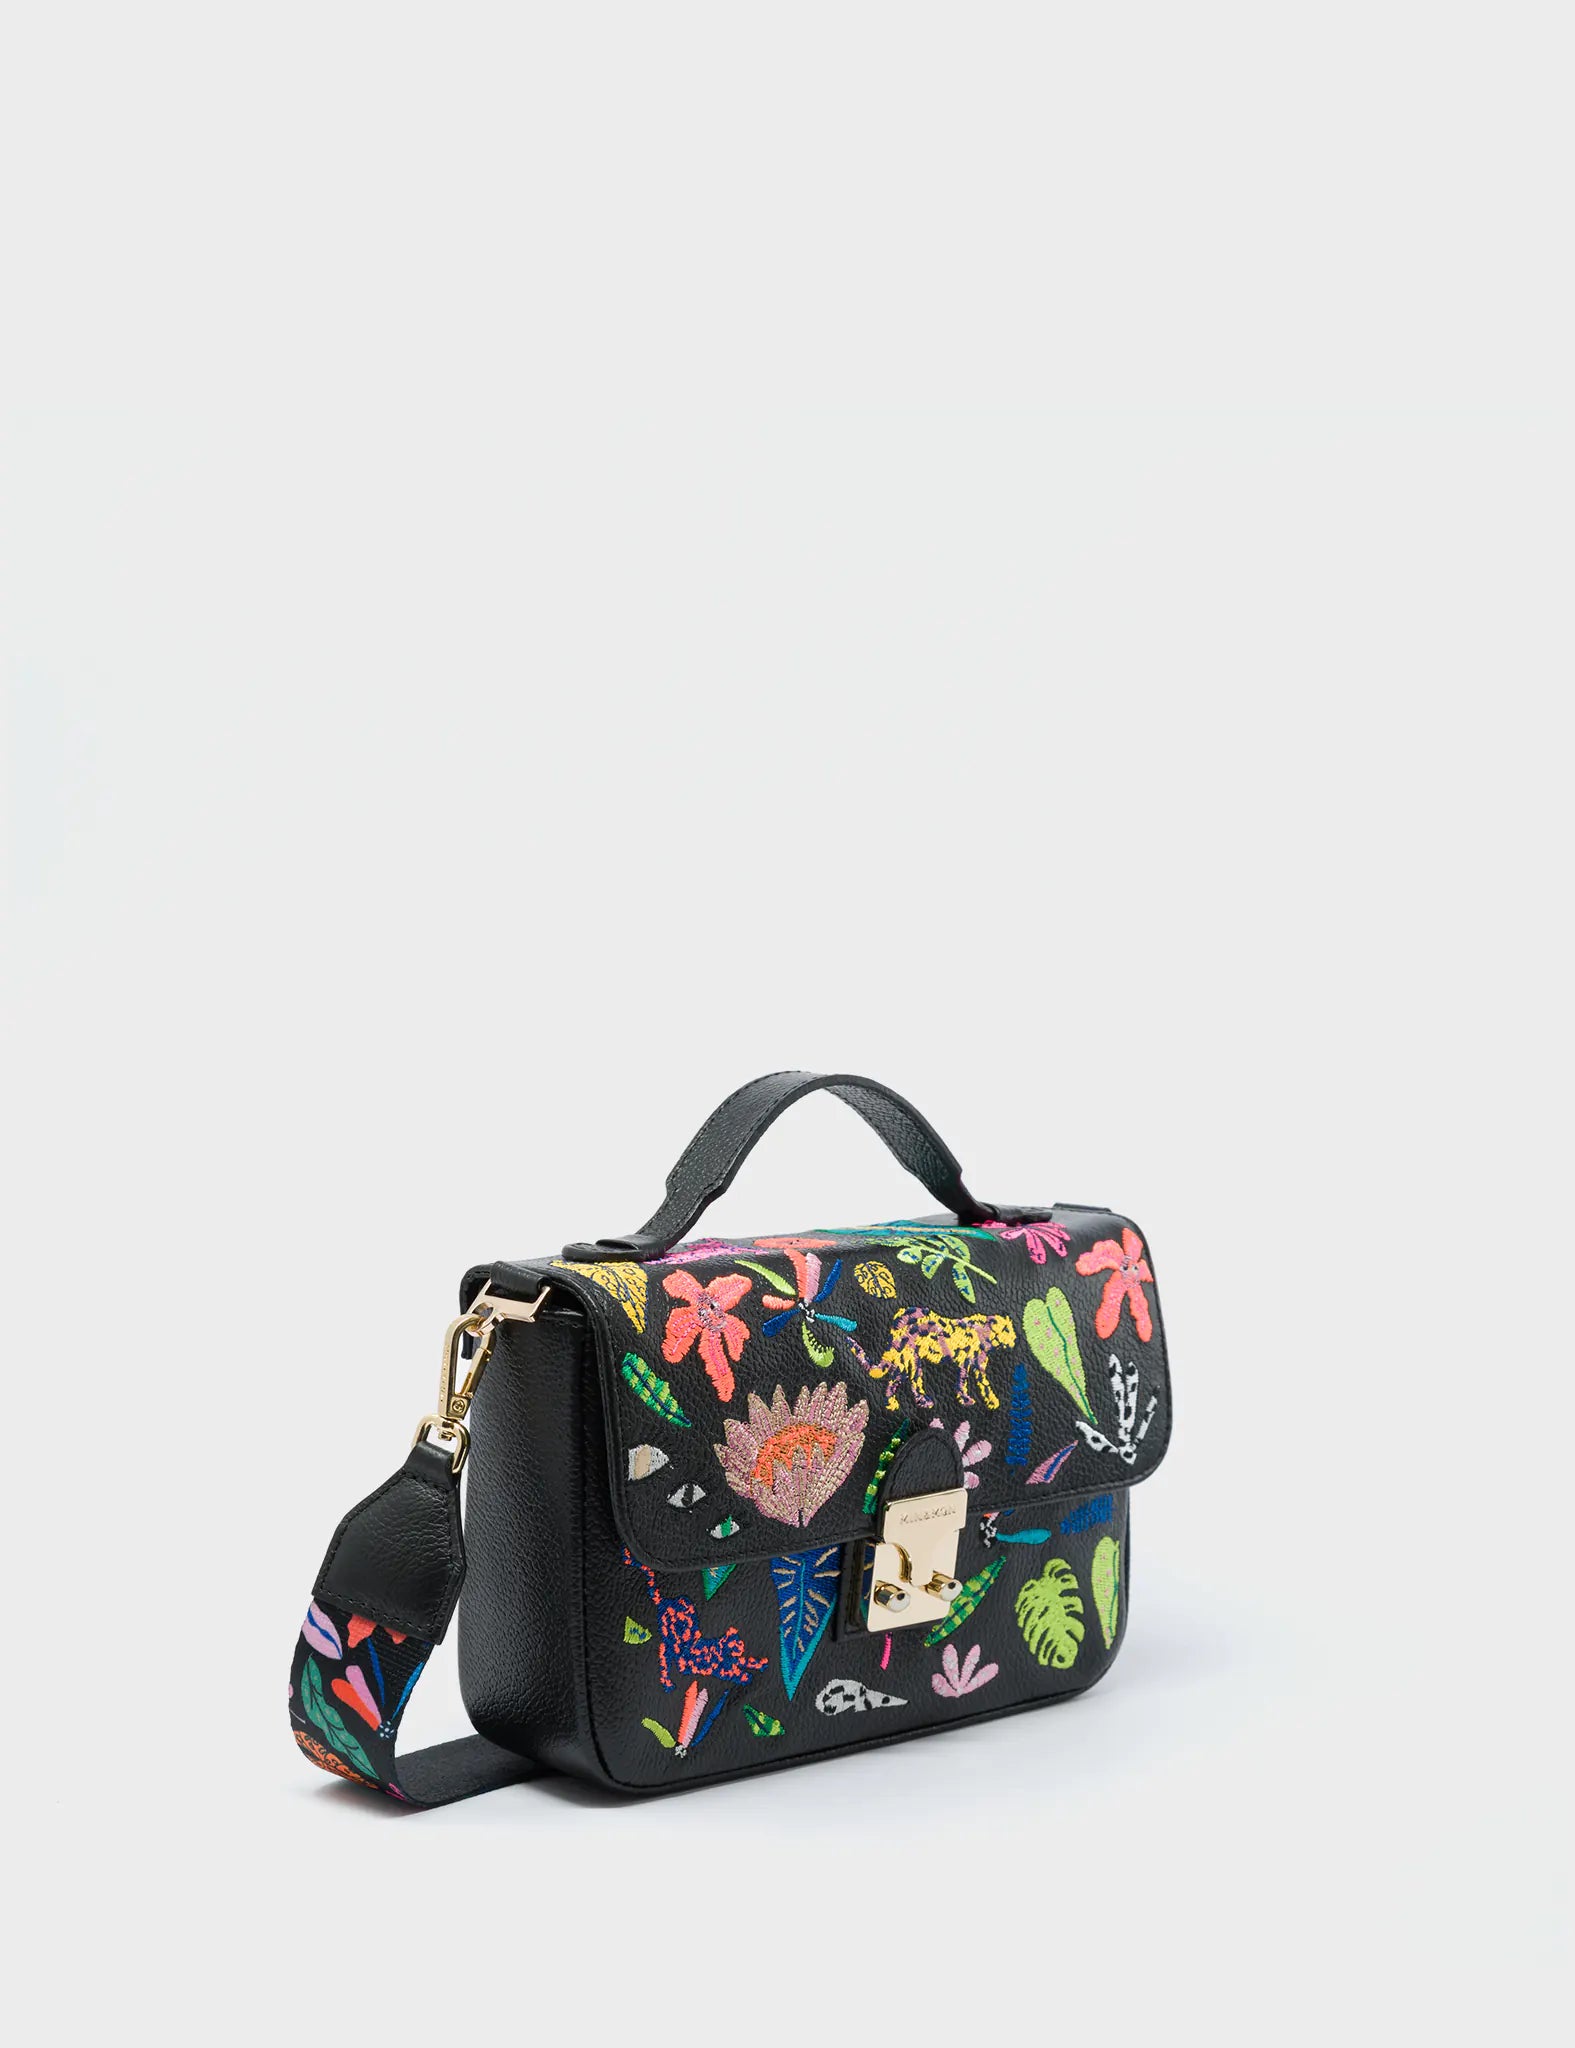 Amantis Cameo Black Leather Crossbody Mini Handbag - El Trópico Embroidery Design